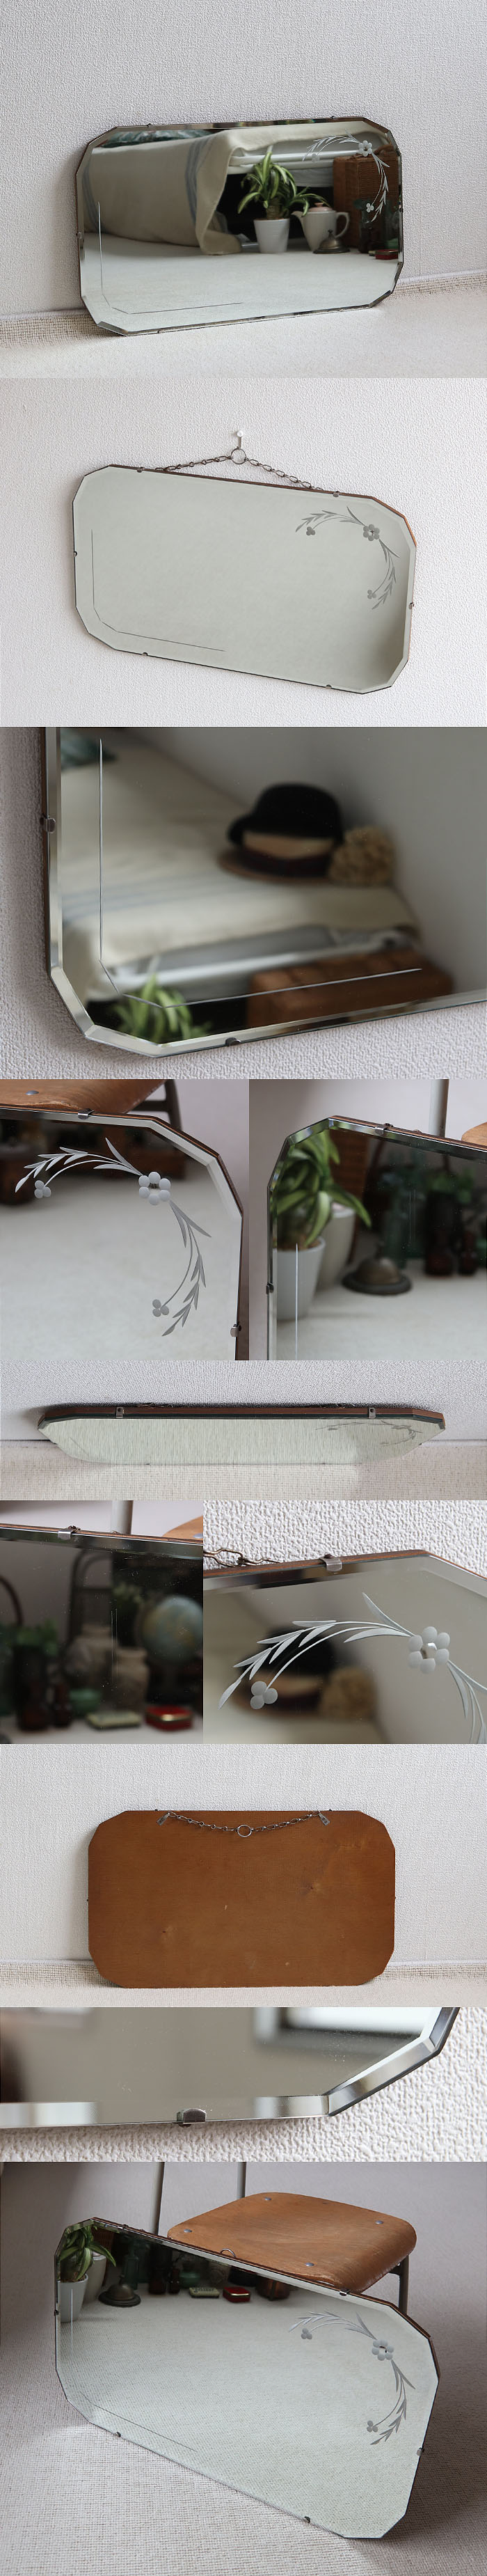 イギリス アンティーク ウォールミラー 壁掛け鏡 エッチングミラー カットガラス V-032